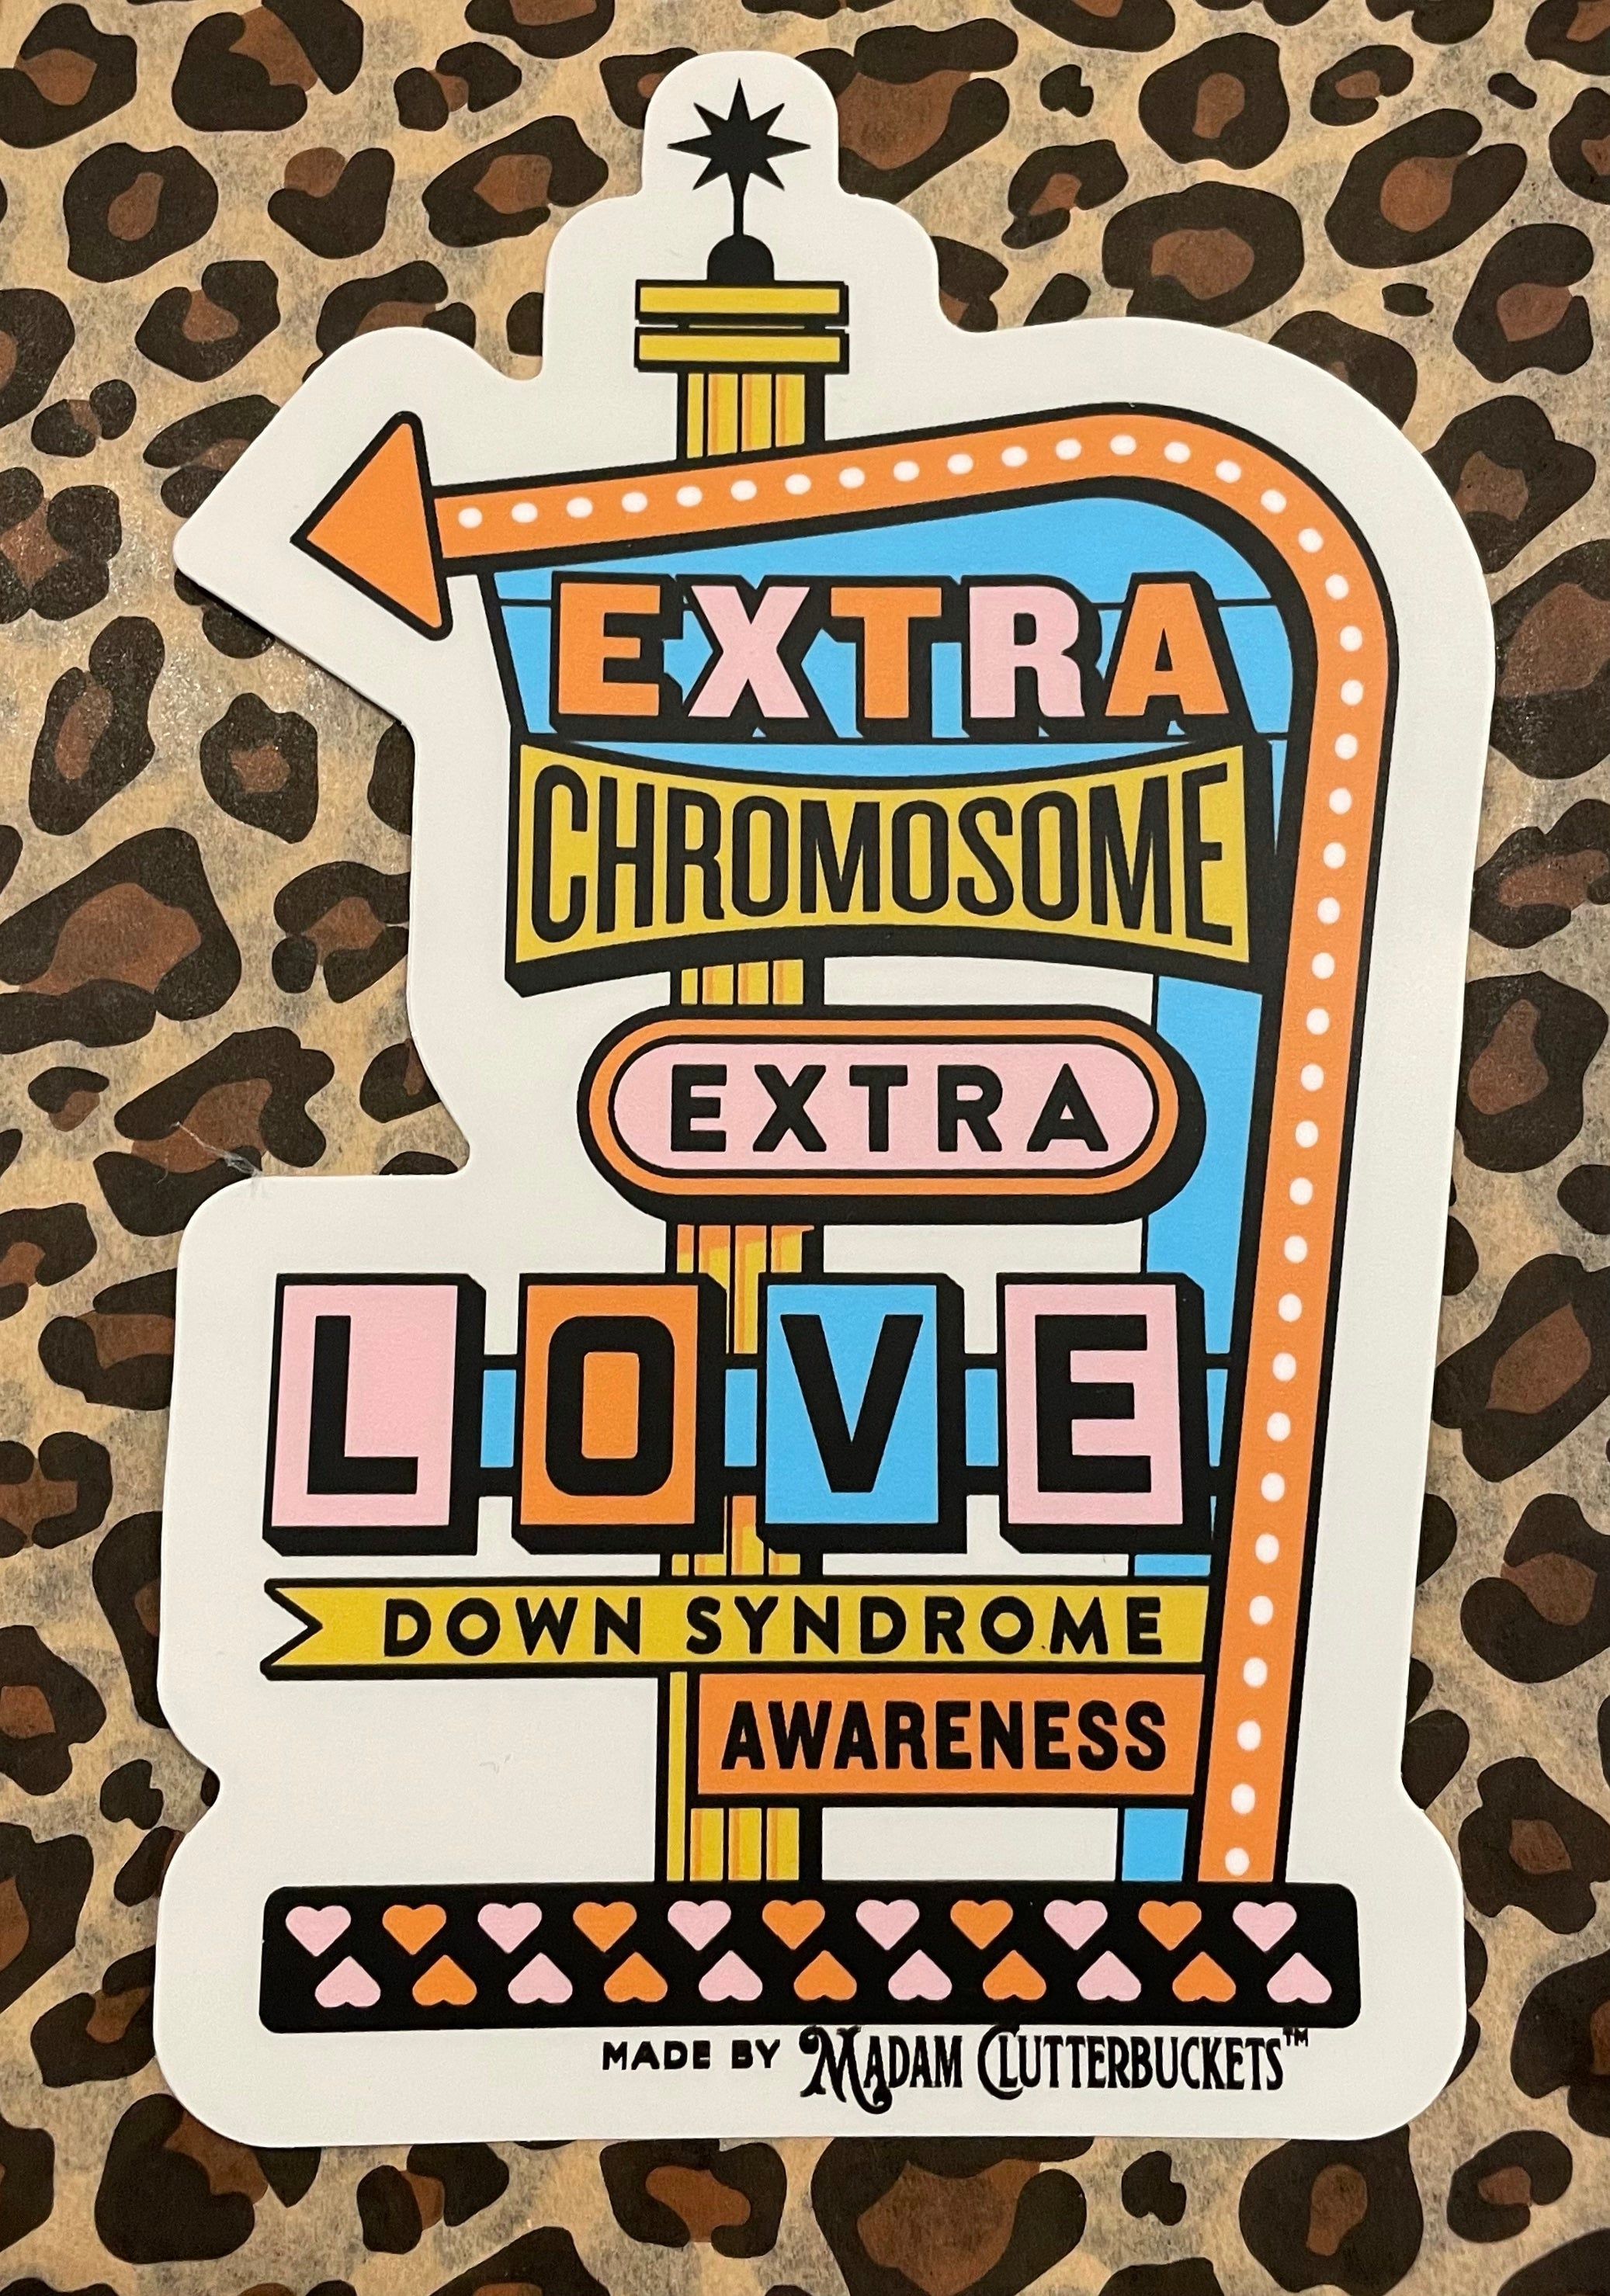 Extra Chromosome, Extra Love Down Syndrome Retro Mid Century Sticker: Two Sizes!